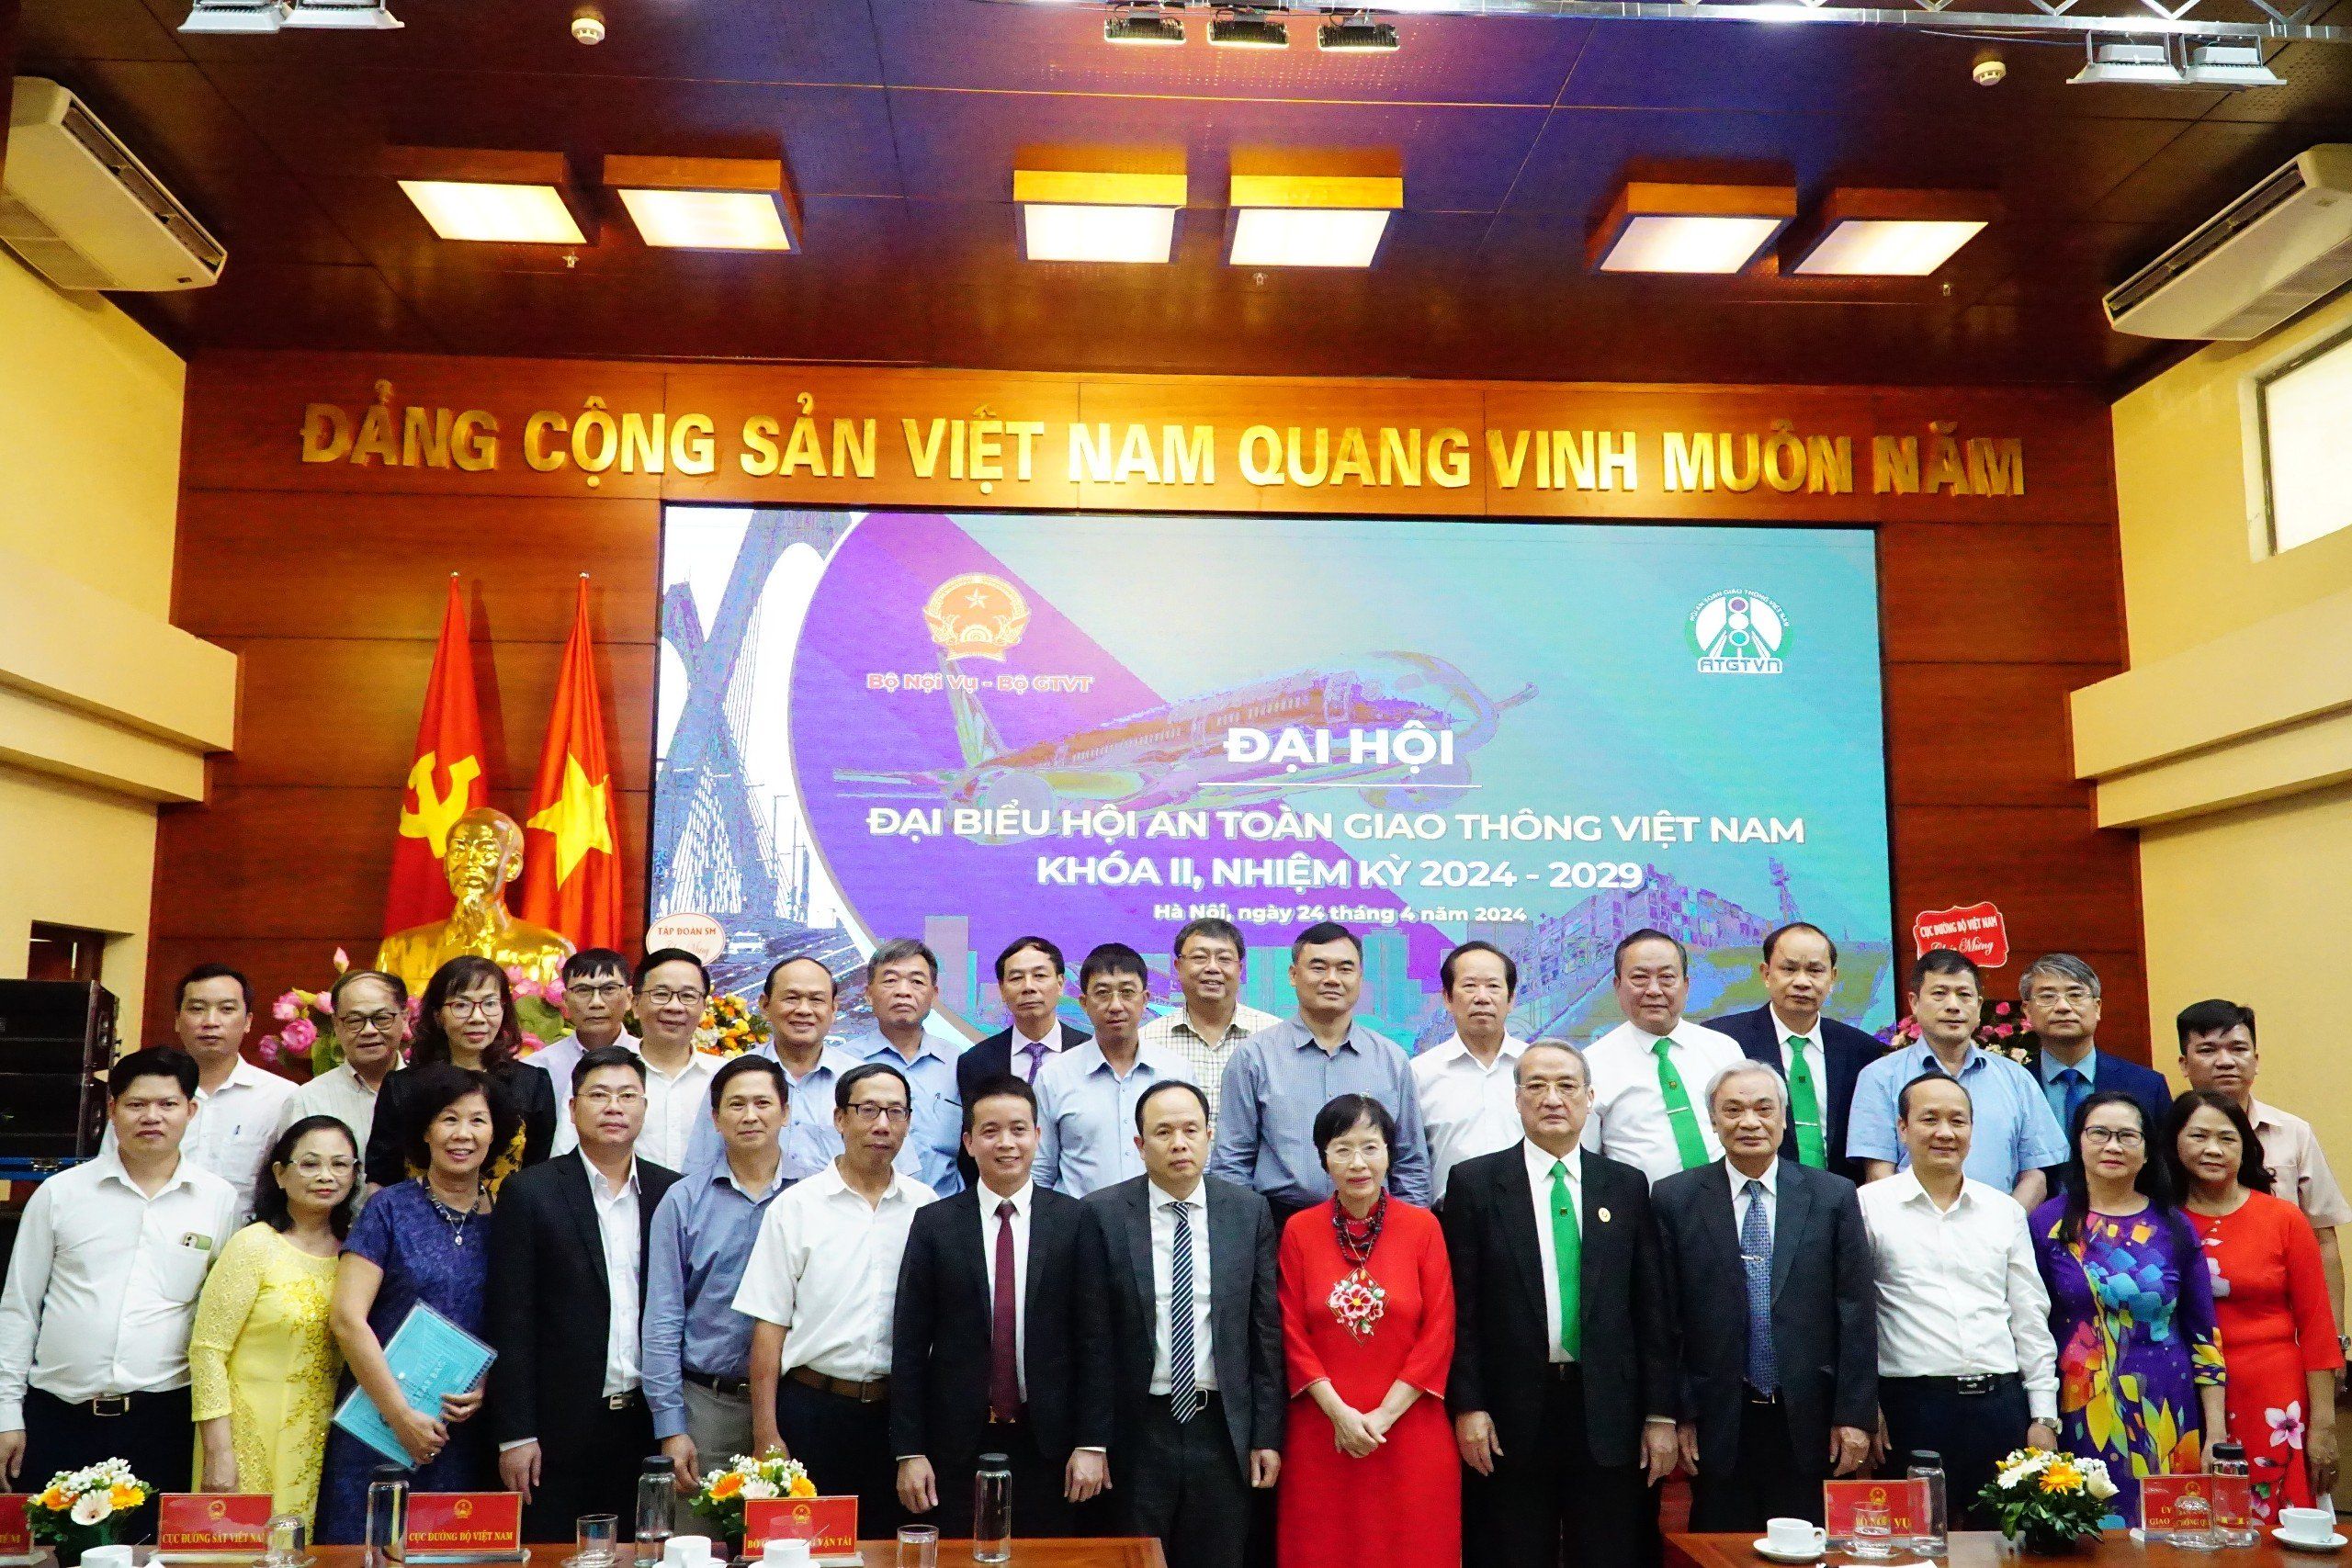 Ông Nguyễn Mạnh Hùng được bầu làm Chủ tịch Hội An toàn Giao thông Việt Nam khóa II